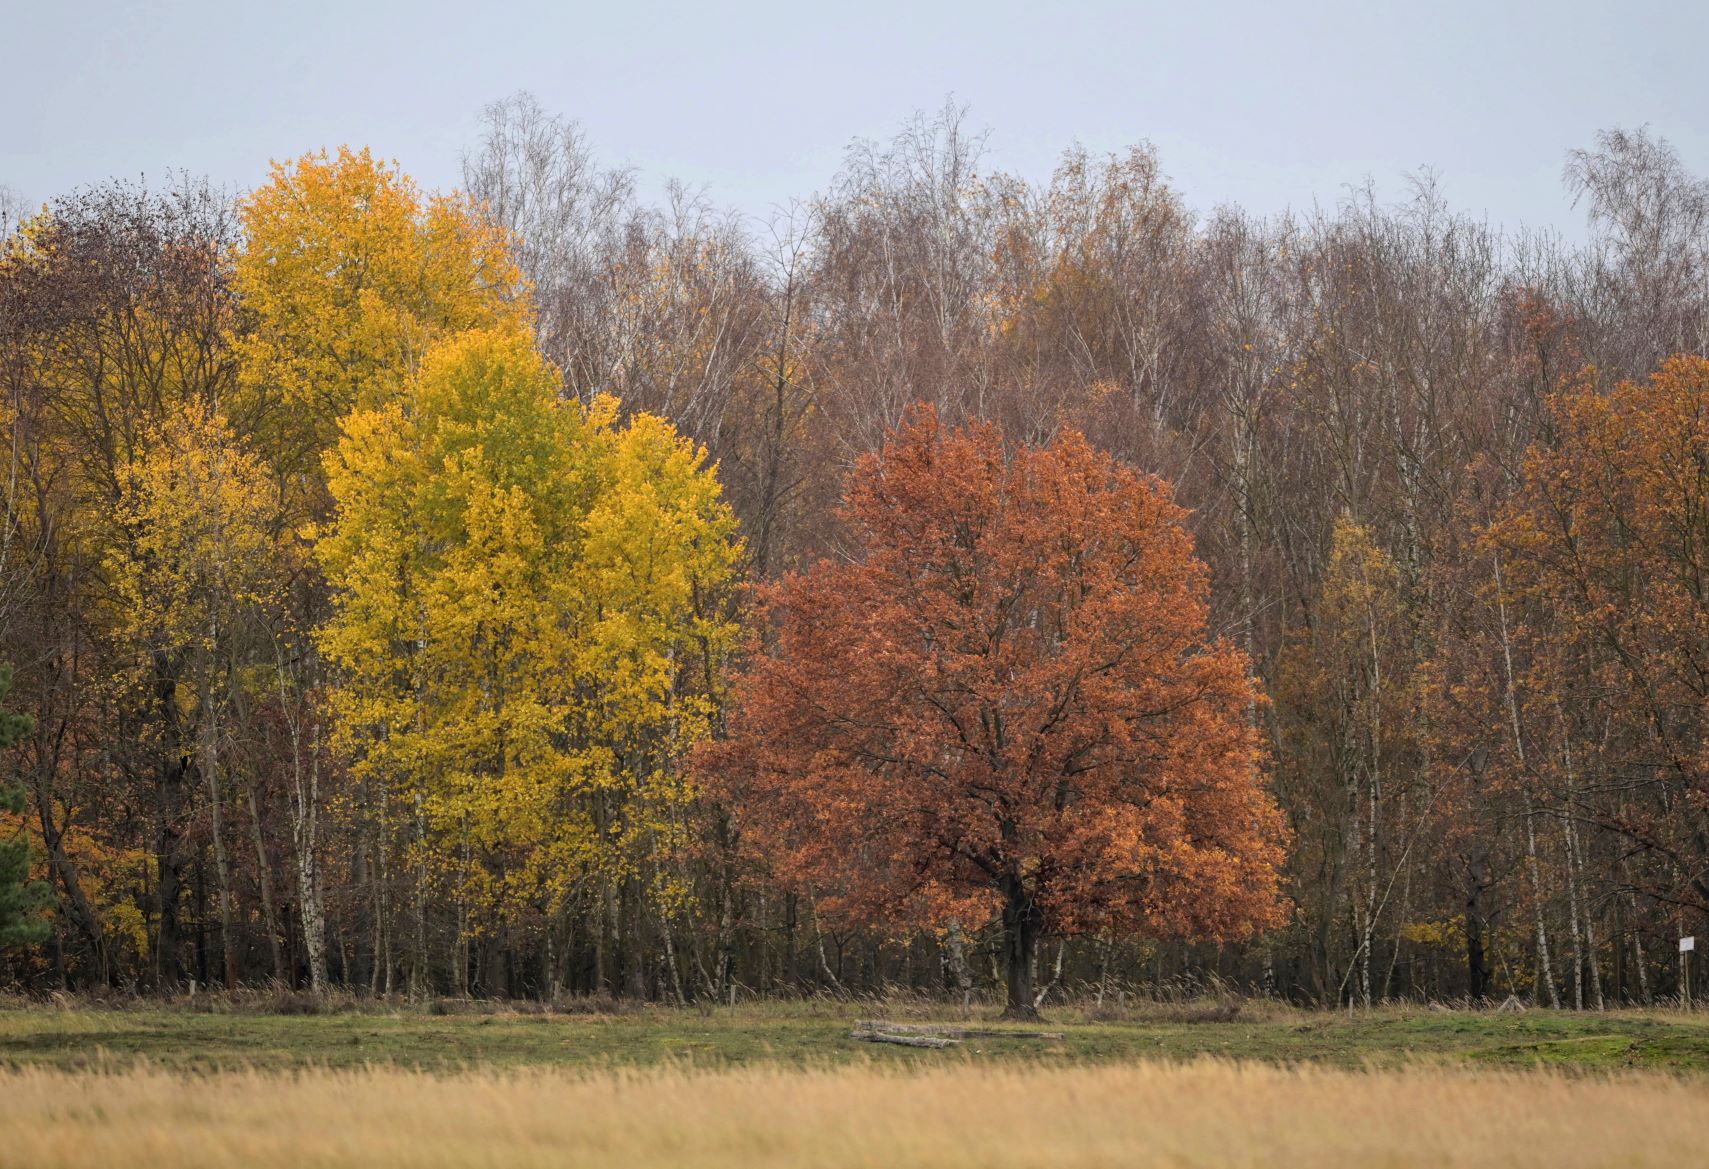 Árvores com folhas de novas cores no outono alemão: estudo indica limitação na capacidade de absorção de carbono (Foto: Soeren Stache/DPA/AFP)